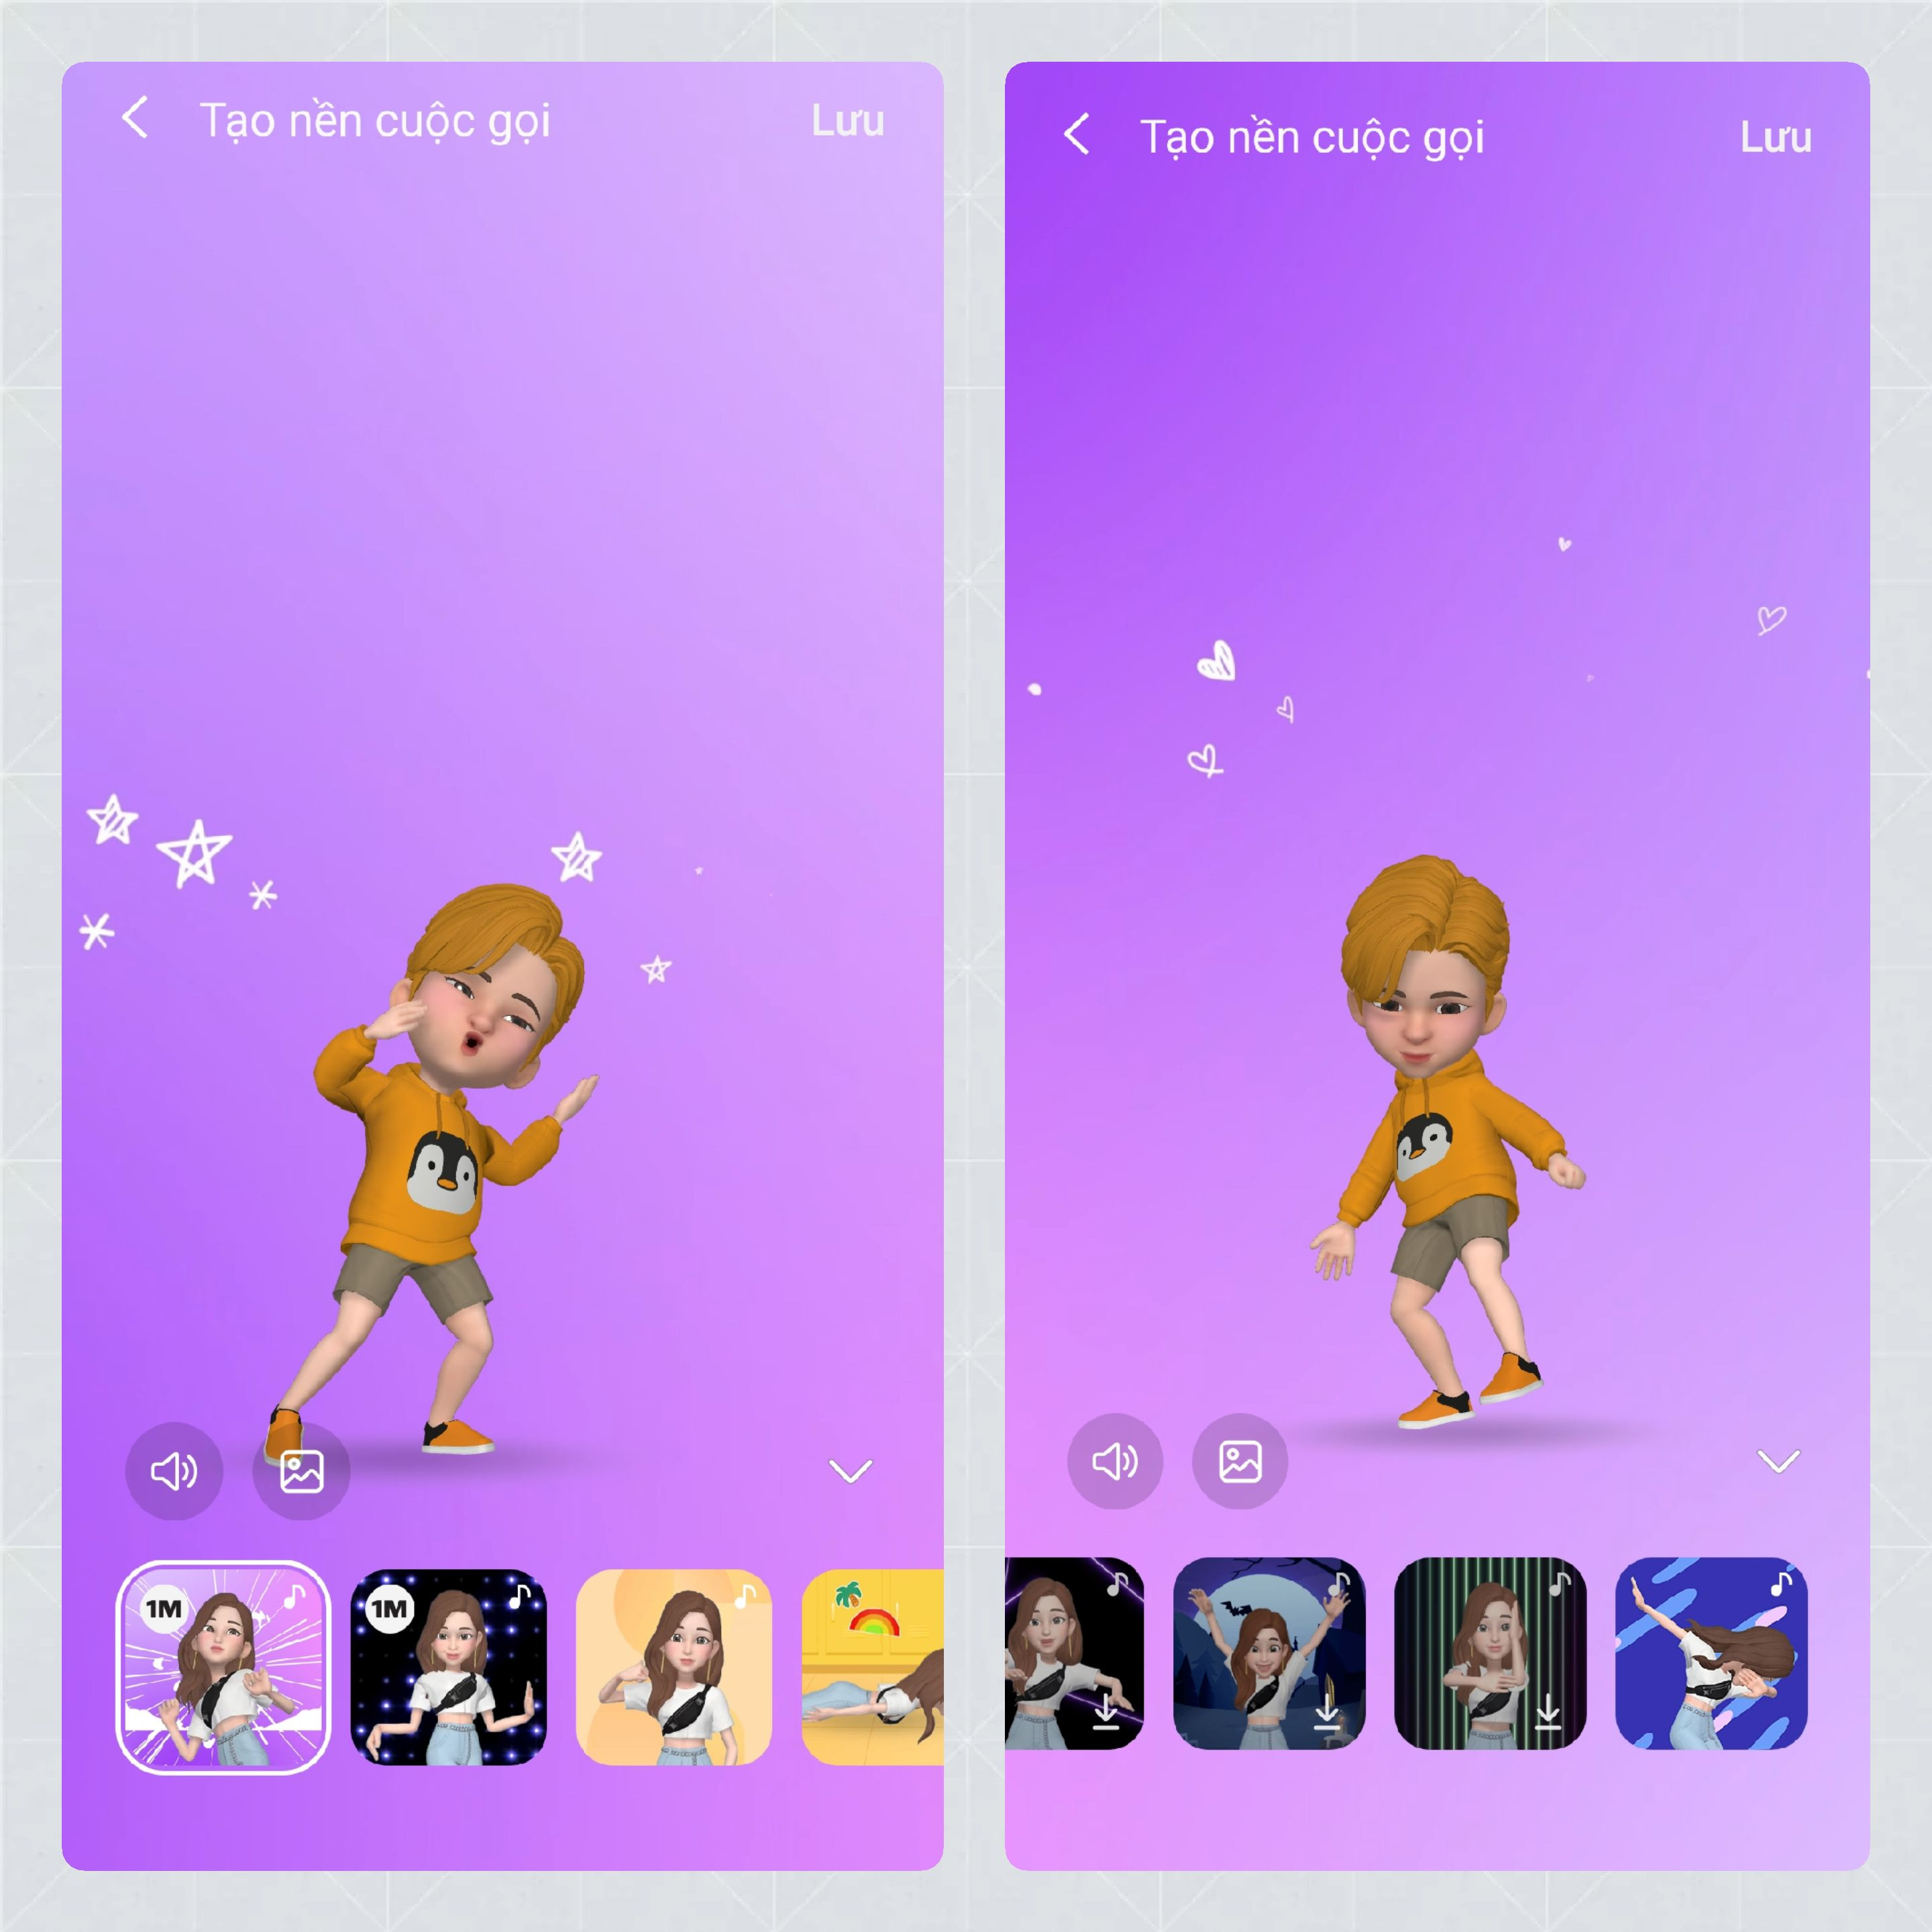 AR Emoji, Samfanscom: Bạn đã sẵn sàng để tạo ra các biểu tượng cảm xúc tuyệt vời với Samfanscom AR Emoji? Hãy khám phá và trải nghiệm AR Emoji mới nhất của Samsung với nhóm Samfanscom trên các mạng xã hội như Facebook, Instagram và Twitter.